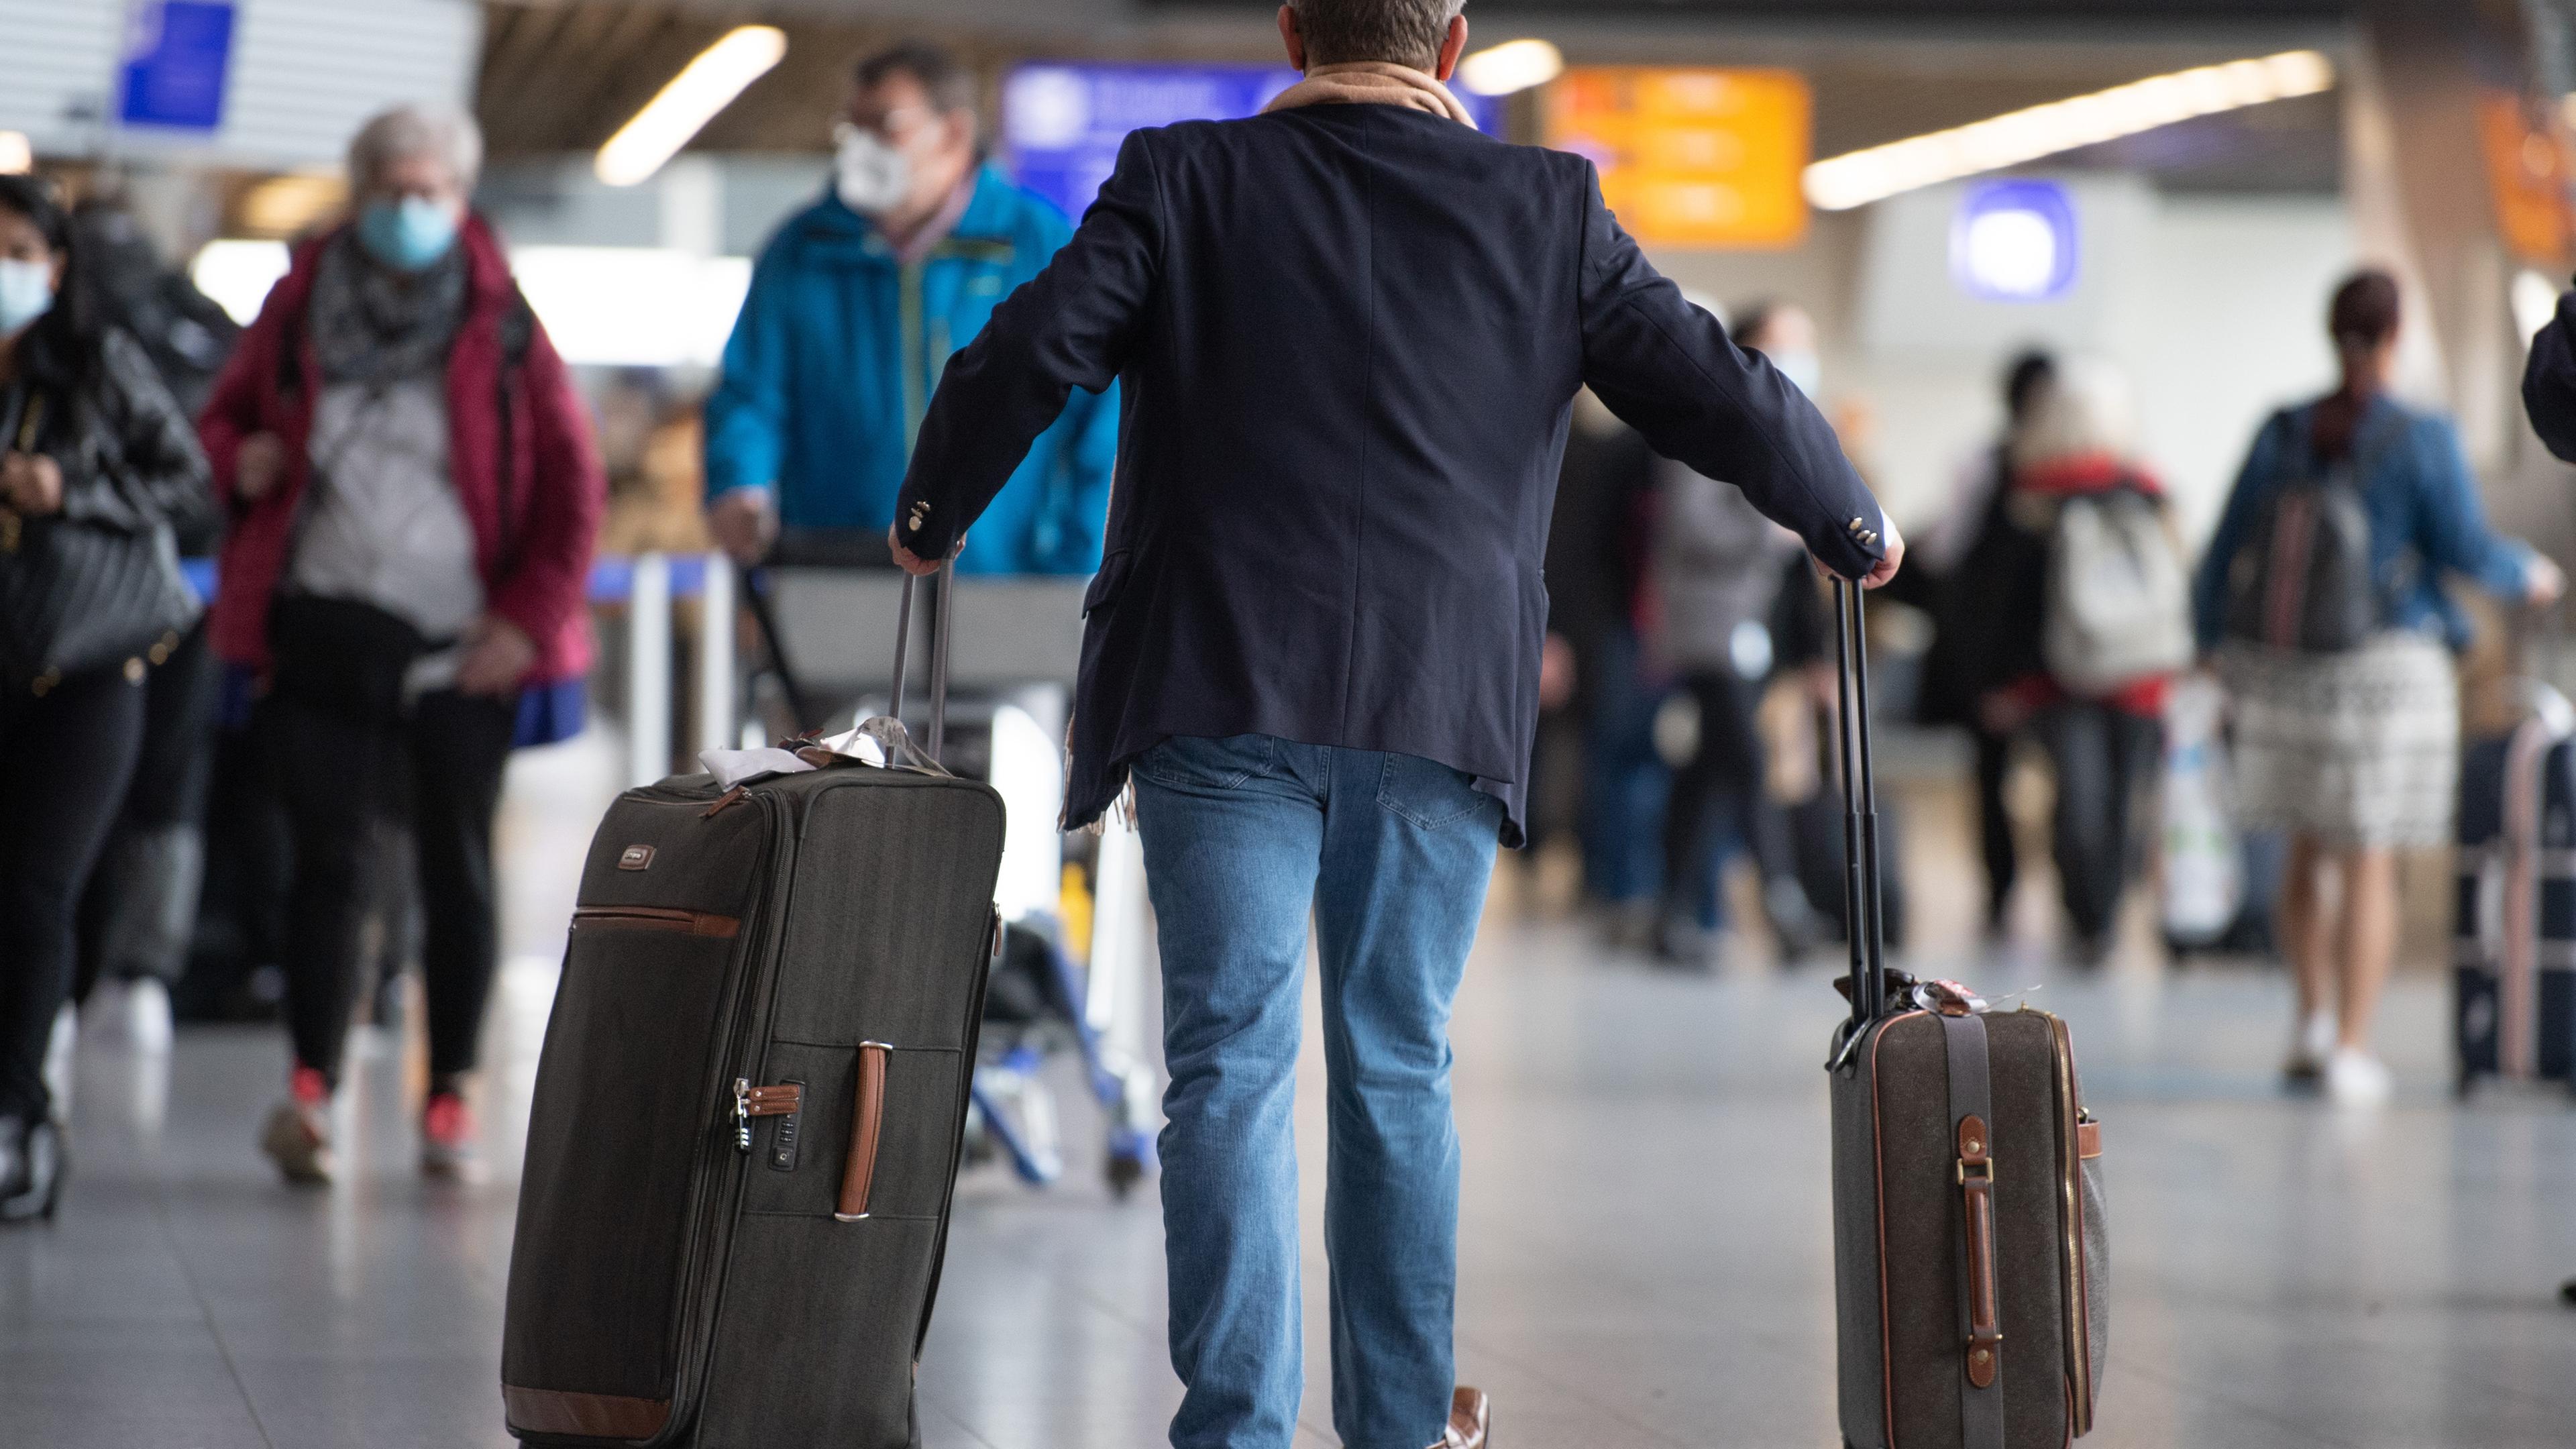 Hessen, Frankfurt/Main: Ein Passagier läuft mit seinem Gepäck am Flughafen Frankfurt.